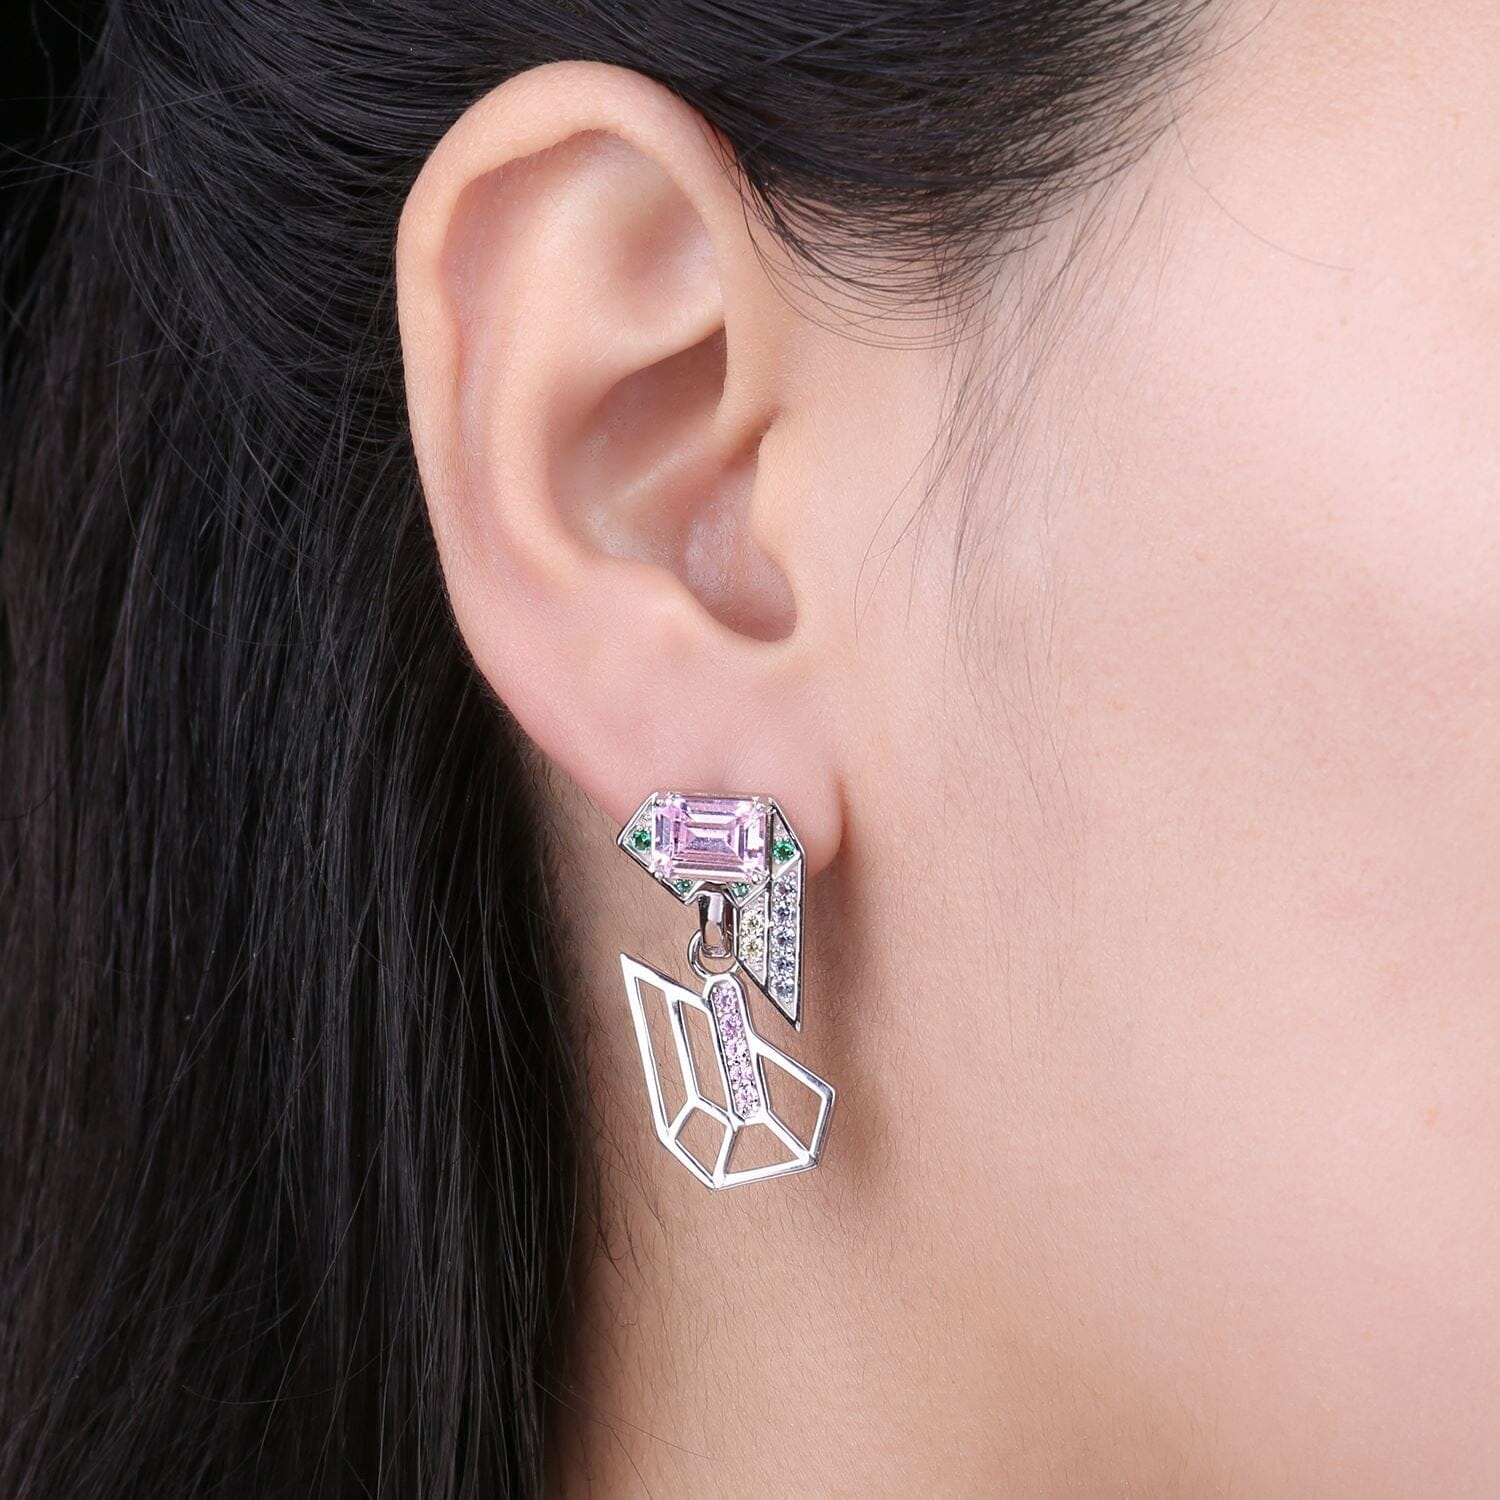 Geometric 6.4ct Emerald Cut Pink Earrings - 925 Sterling SilverEarrings